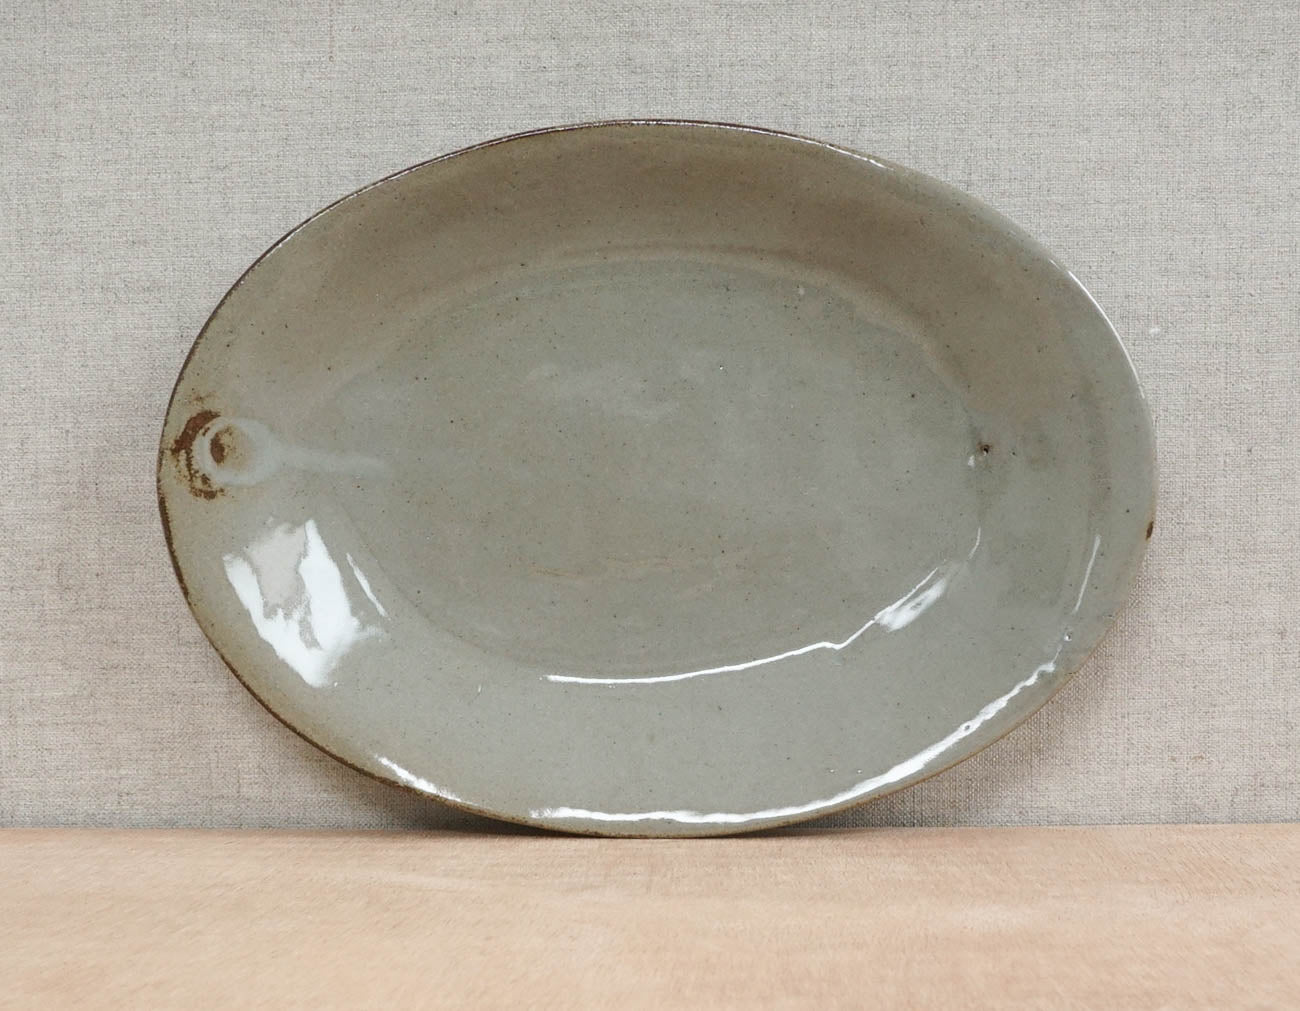 Oval-shaped plate